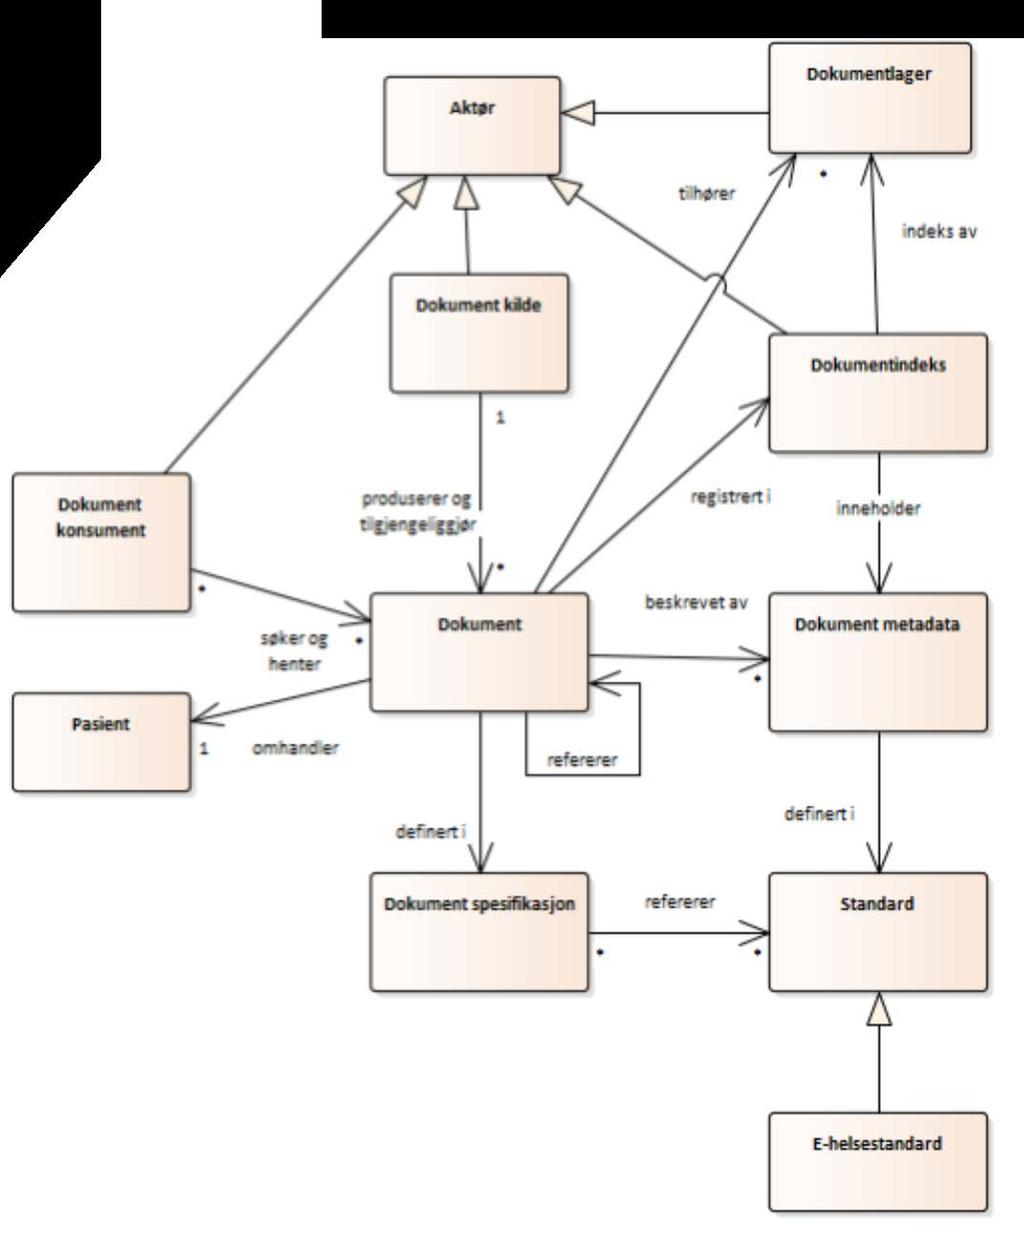 5 Begrepsmodell Figur 3 viser begrepsmodell for dokumenter.